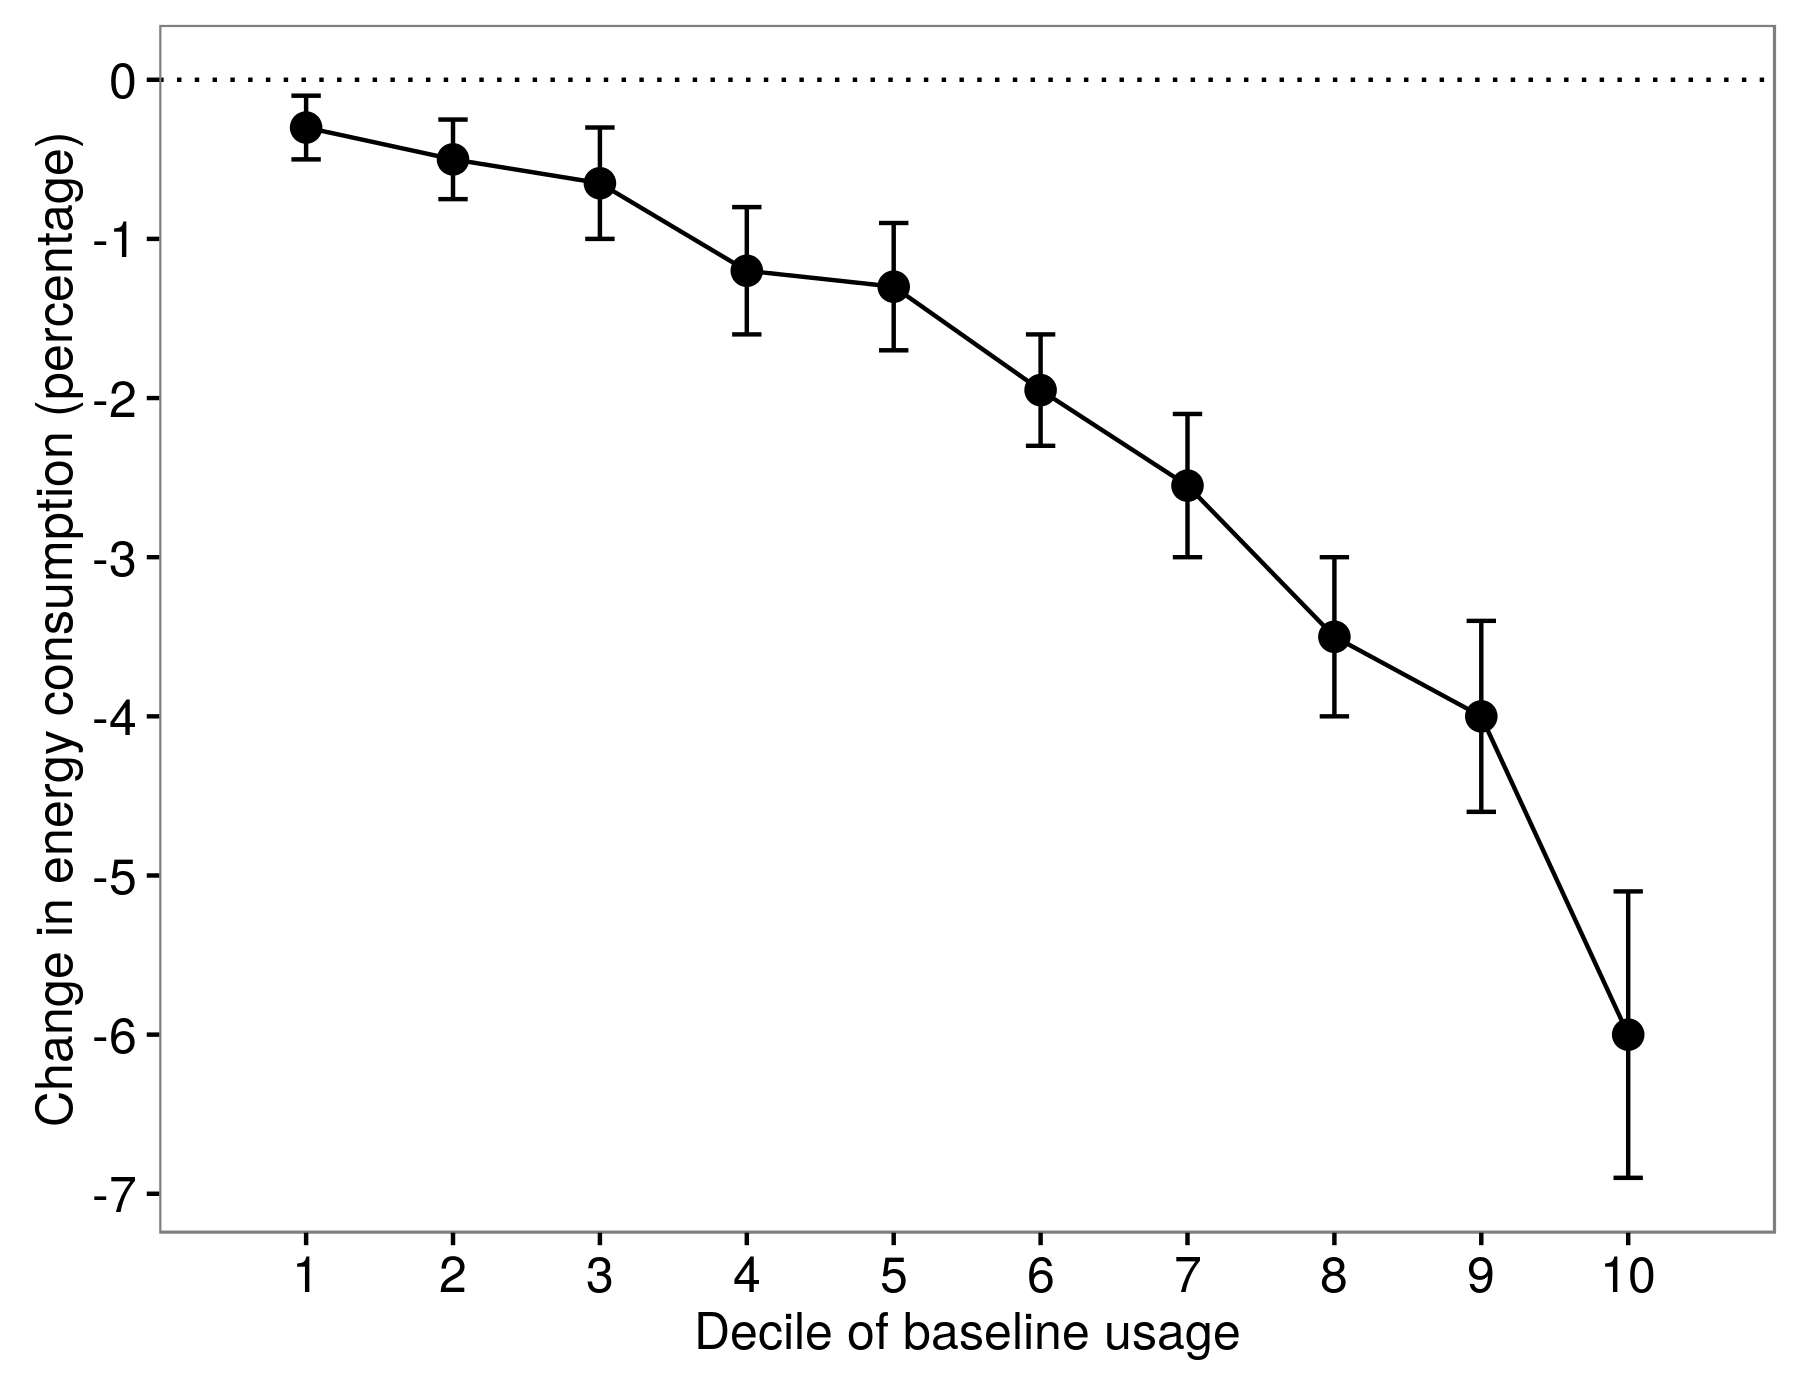 Figura 4.8: Heterogenitatea efectelor tratamentului în Allcott (2011). Scăderea consumului de energie a fost diferită pentru persoanele cu diferite decile ale utilizării inițiale. Adaptat de la Allcott (2011), figura 8.